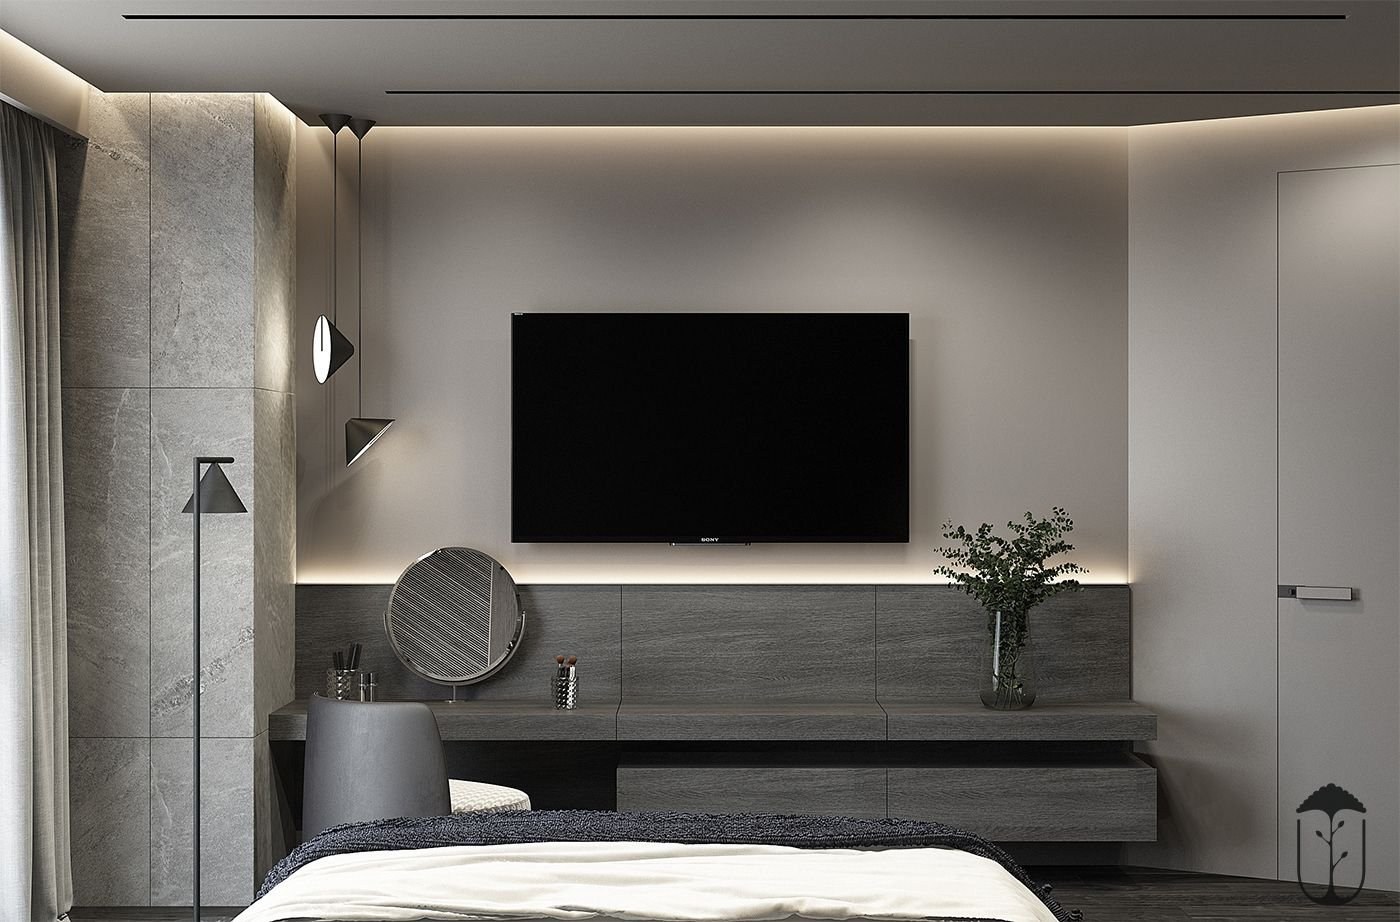 Современная стена с телевизором. Телевизор в спальне на стене. Интерьер спальни с телевизором. Телевизор в интерьере Минимализм. Интерьер спальни с телевизором на стене.